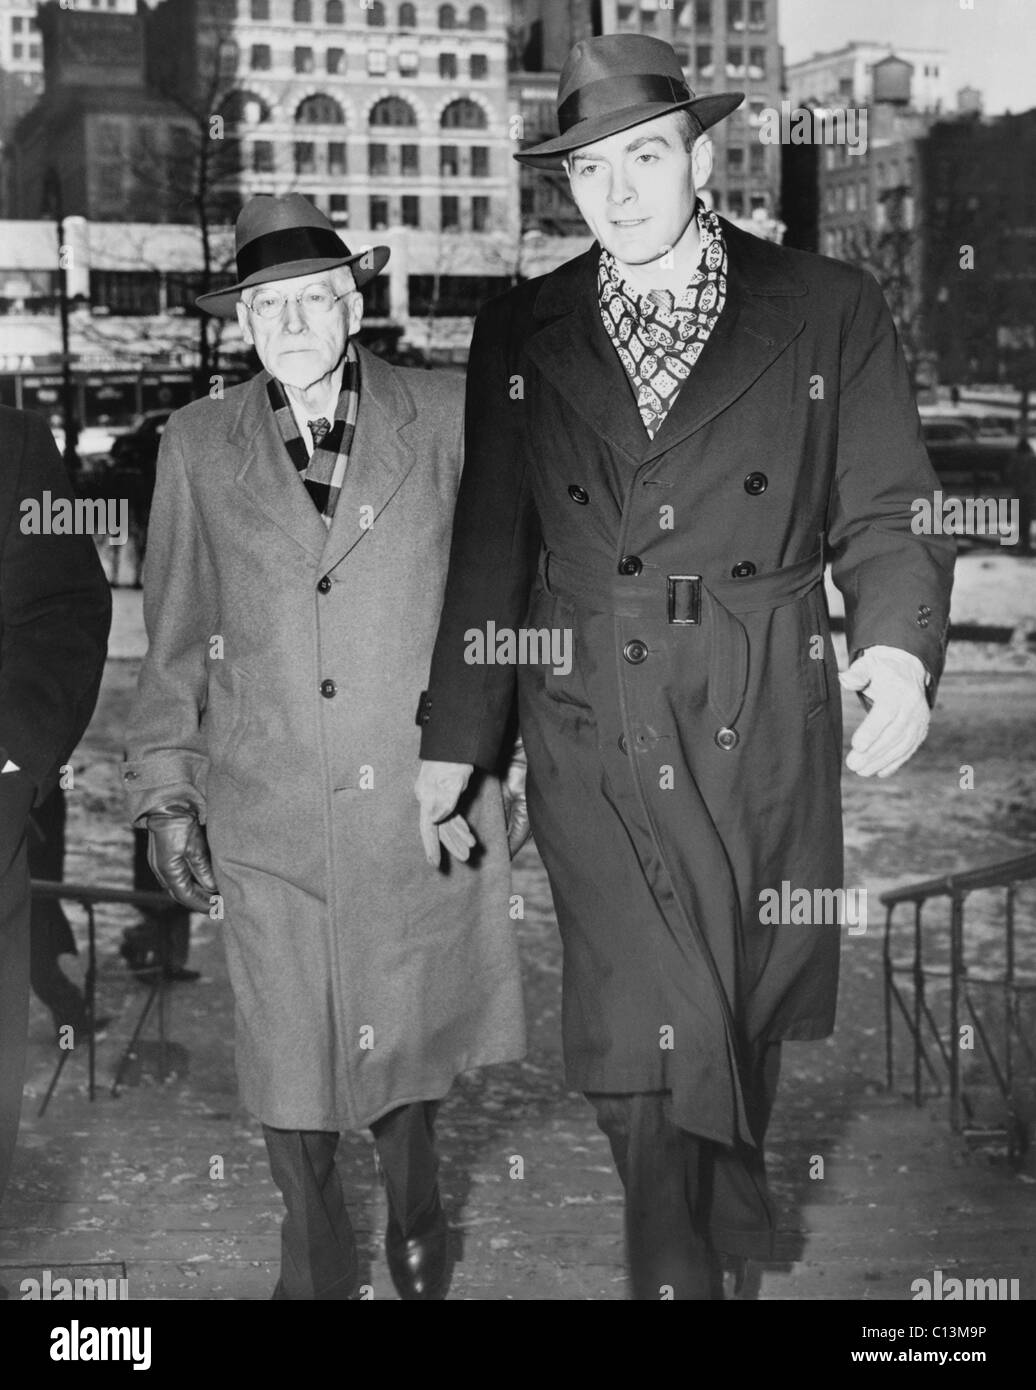 William Walter Remington 1917-1954 auf rechten Seite war eine US-Regierung Ökonom von der sowjetischen Spion und Überläufer Elizabeth Bentley der Spionage beschuldigt. Er wurde wegen Meineids verurteilt und ermordet während der Verbüßung seiner Strafe in Lewisburg Federal Penitentiary ich Stockfoto